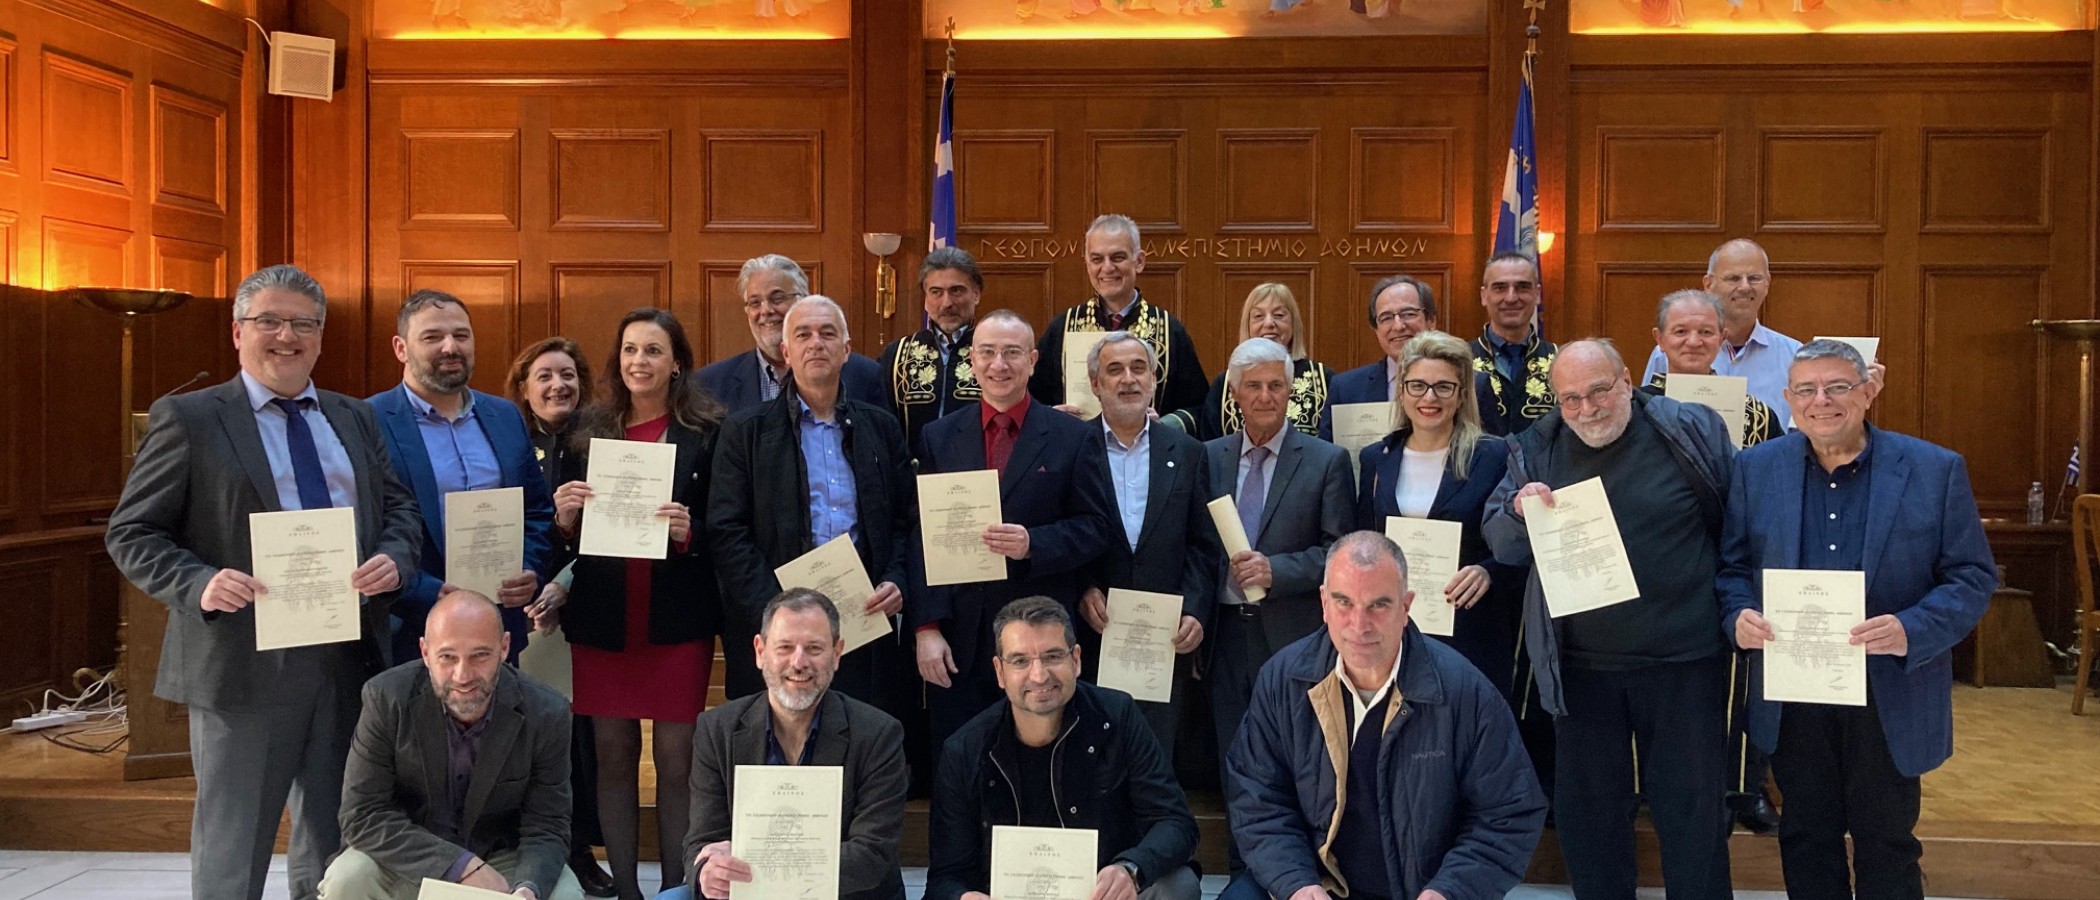 Βράβευση είκοσι εννέα μελών του Γεωπονικού Πανεπιστημίου Αθηνών ως κορυφαίοι επιστήμονες σε παγκόσμιο επίπεδο στην εκδήλωση για την Εθνική Εορτή της 25ης Μαρτίου